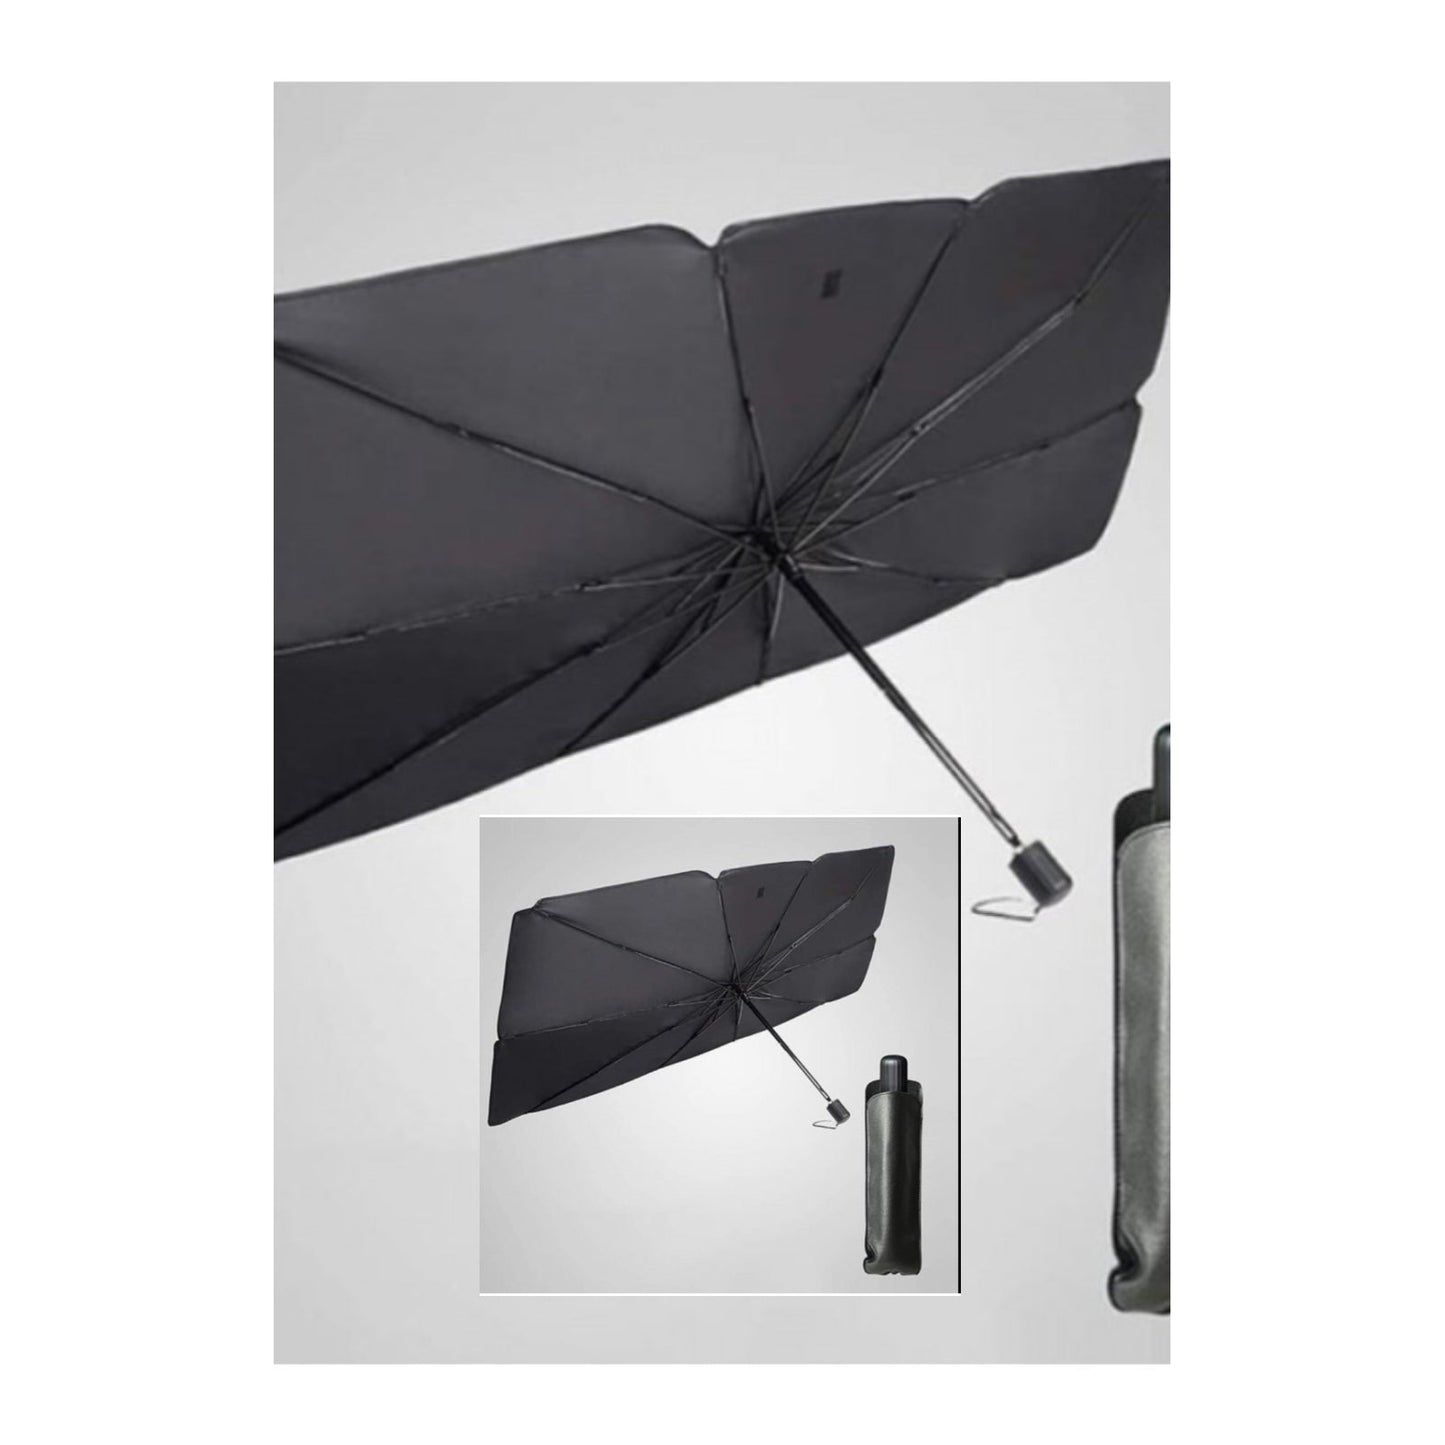 Set 2 x Parasolar pliabil pentru masina, in forma de umbrela